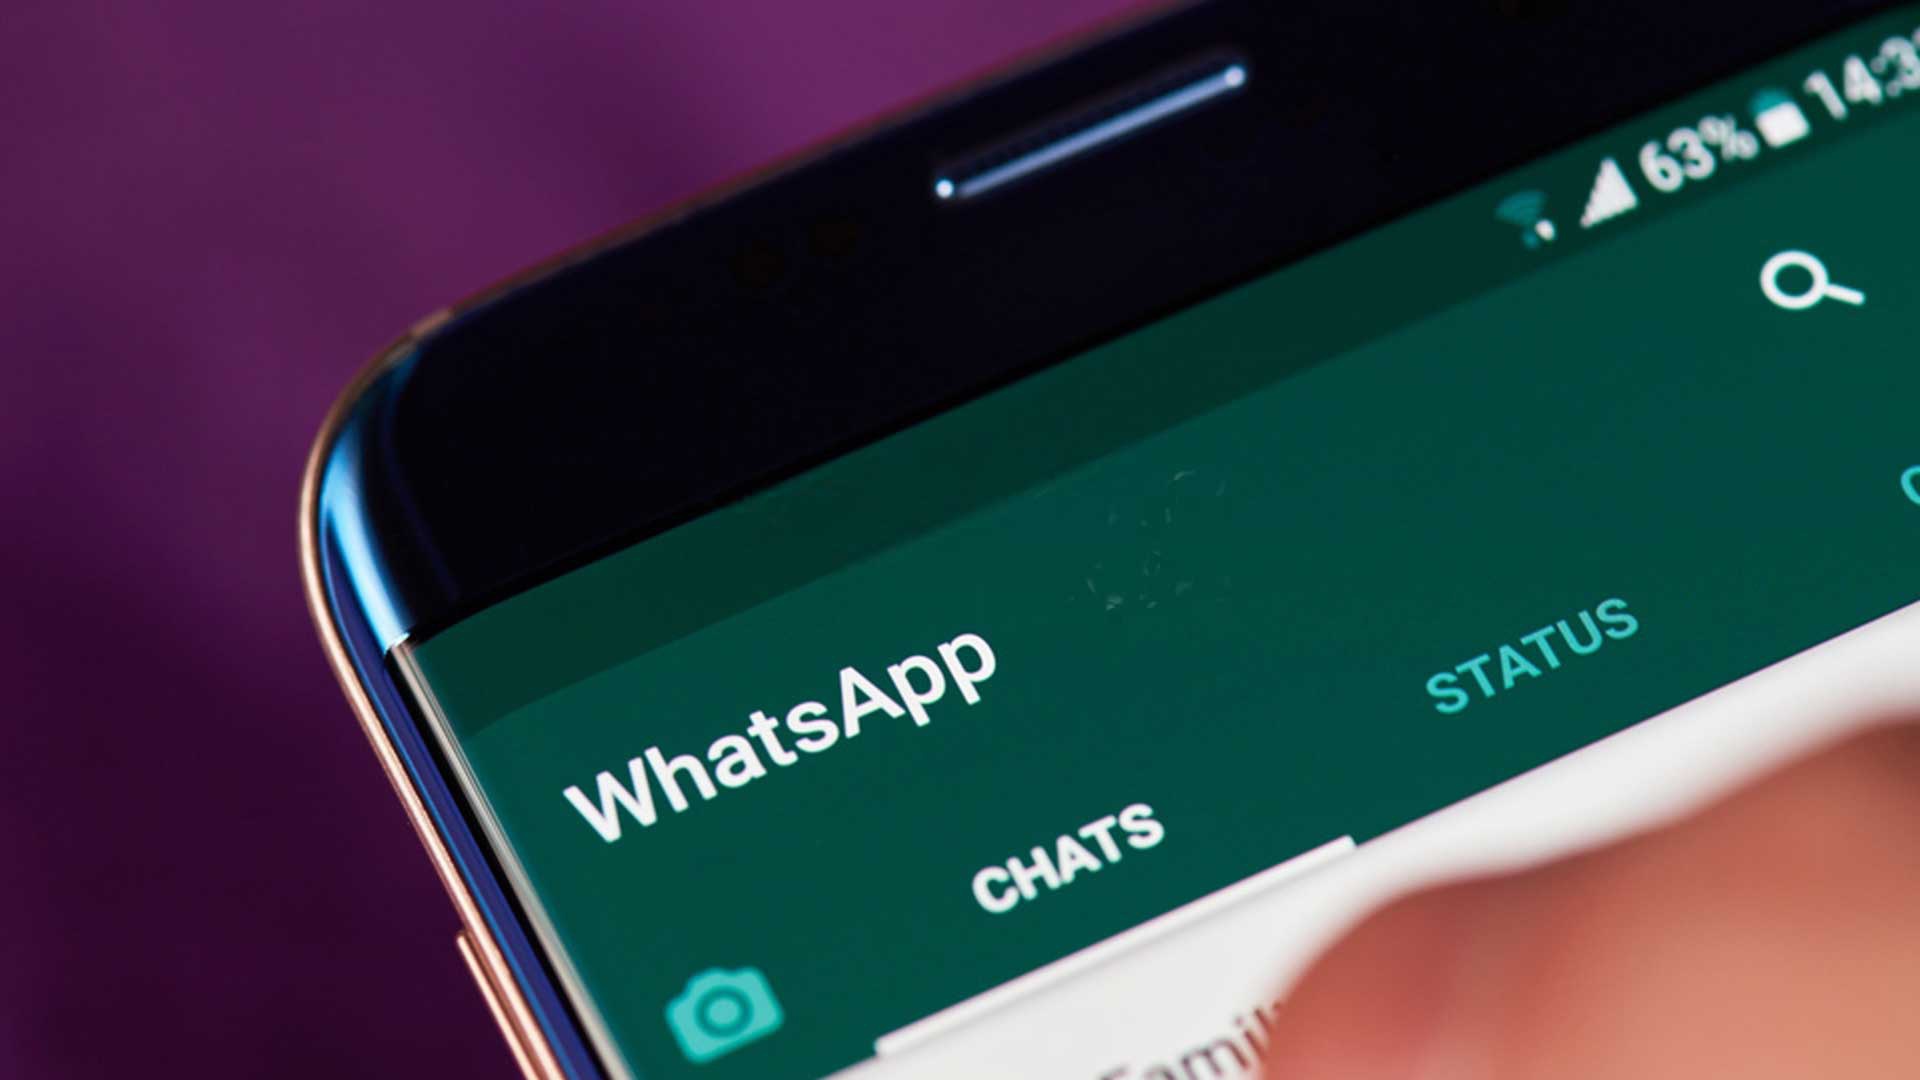 Procon-SP notifica WhatsApp por golpes que acontecem na plataforma